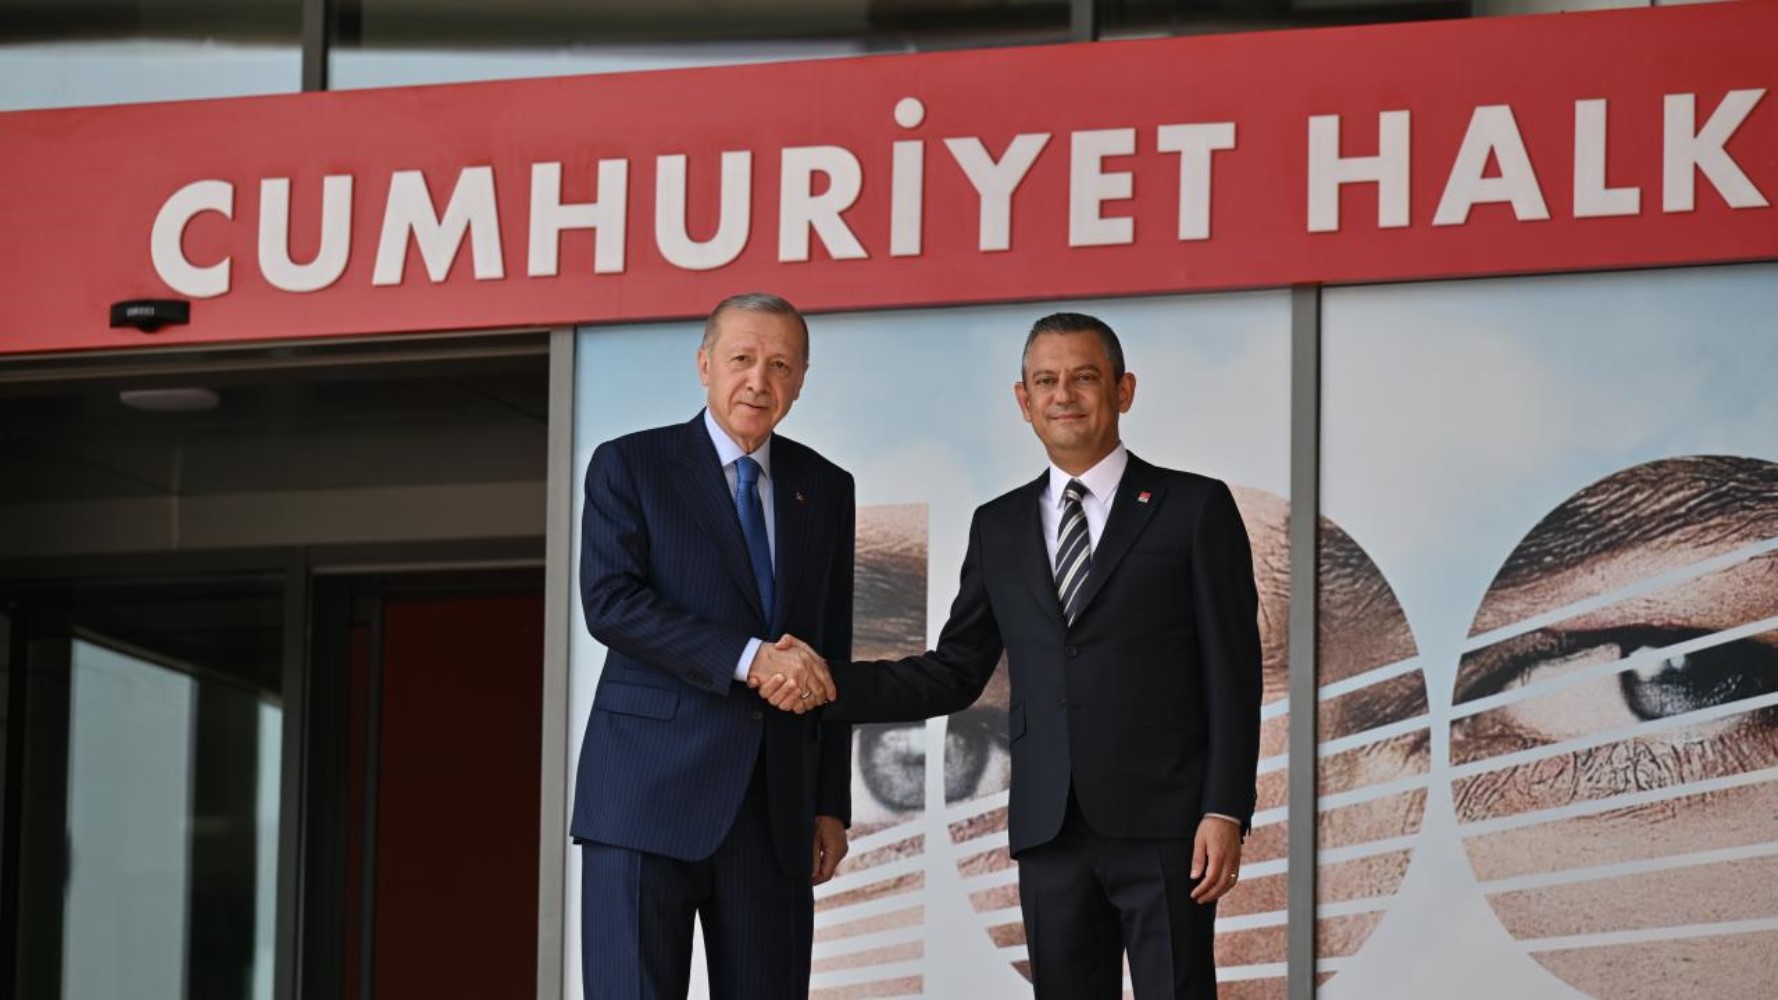 Yurttaş, Erdoğan-Özel görüşmesini nasıl değerlendiriyor? Kim daha avantajlı?